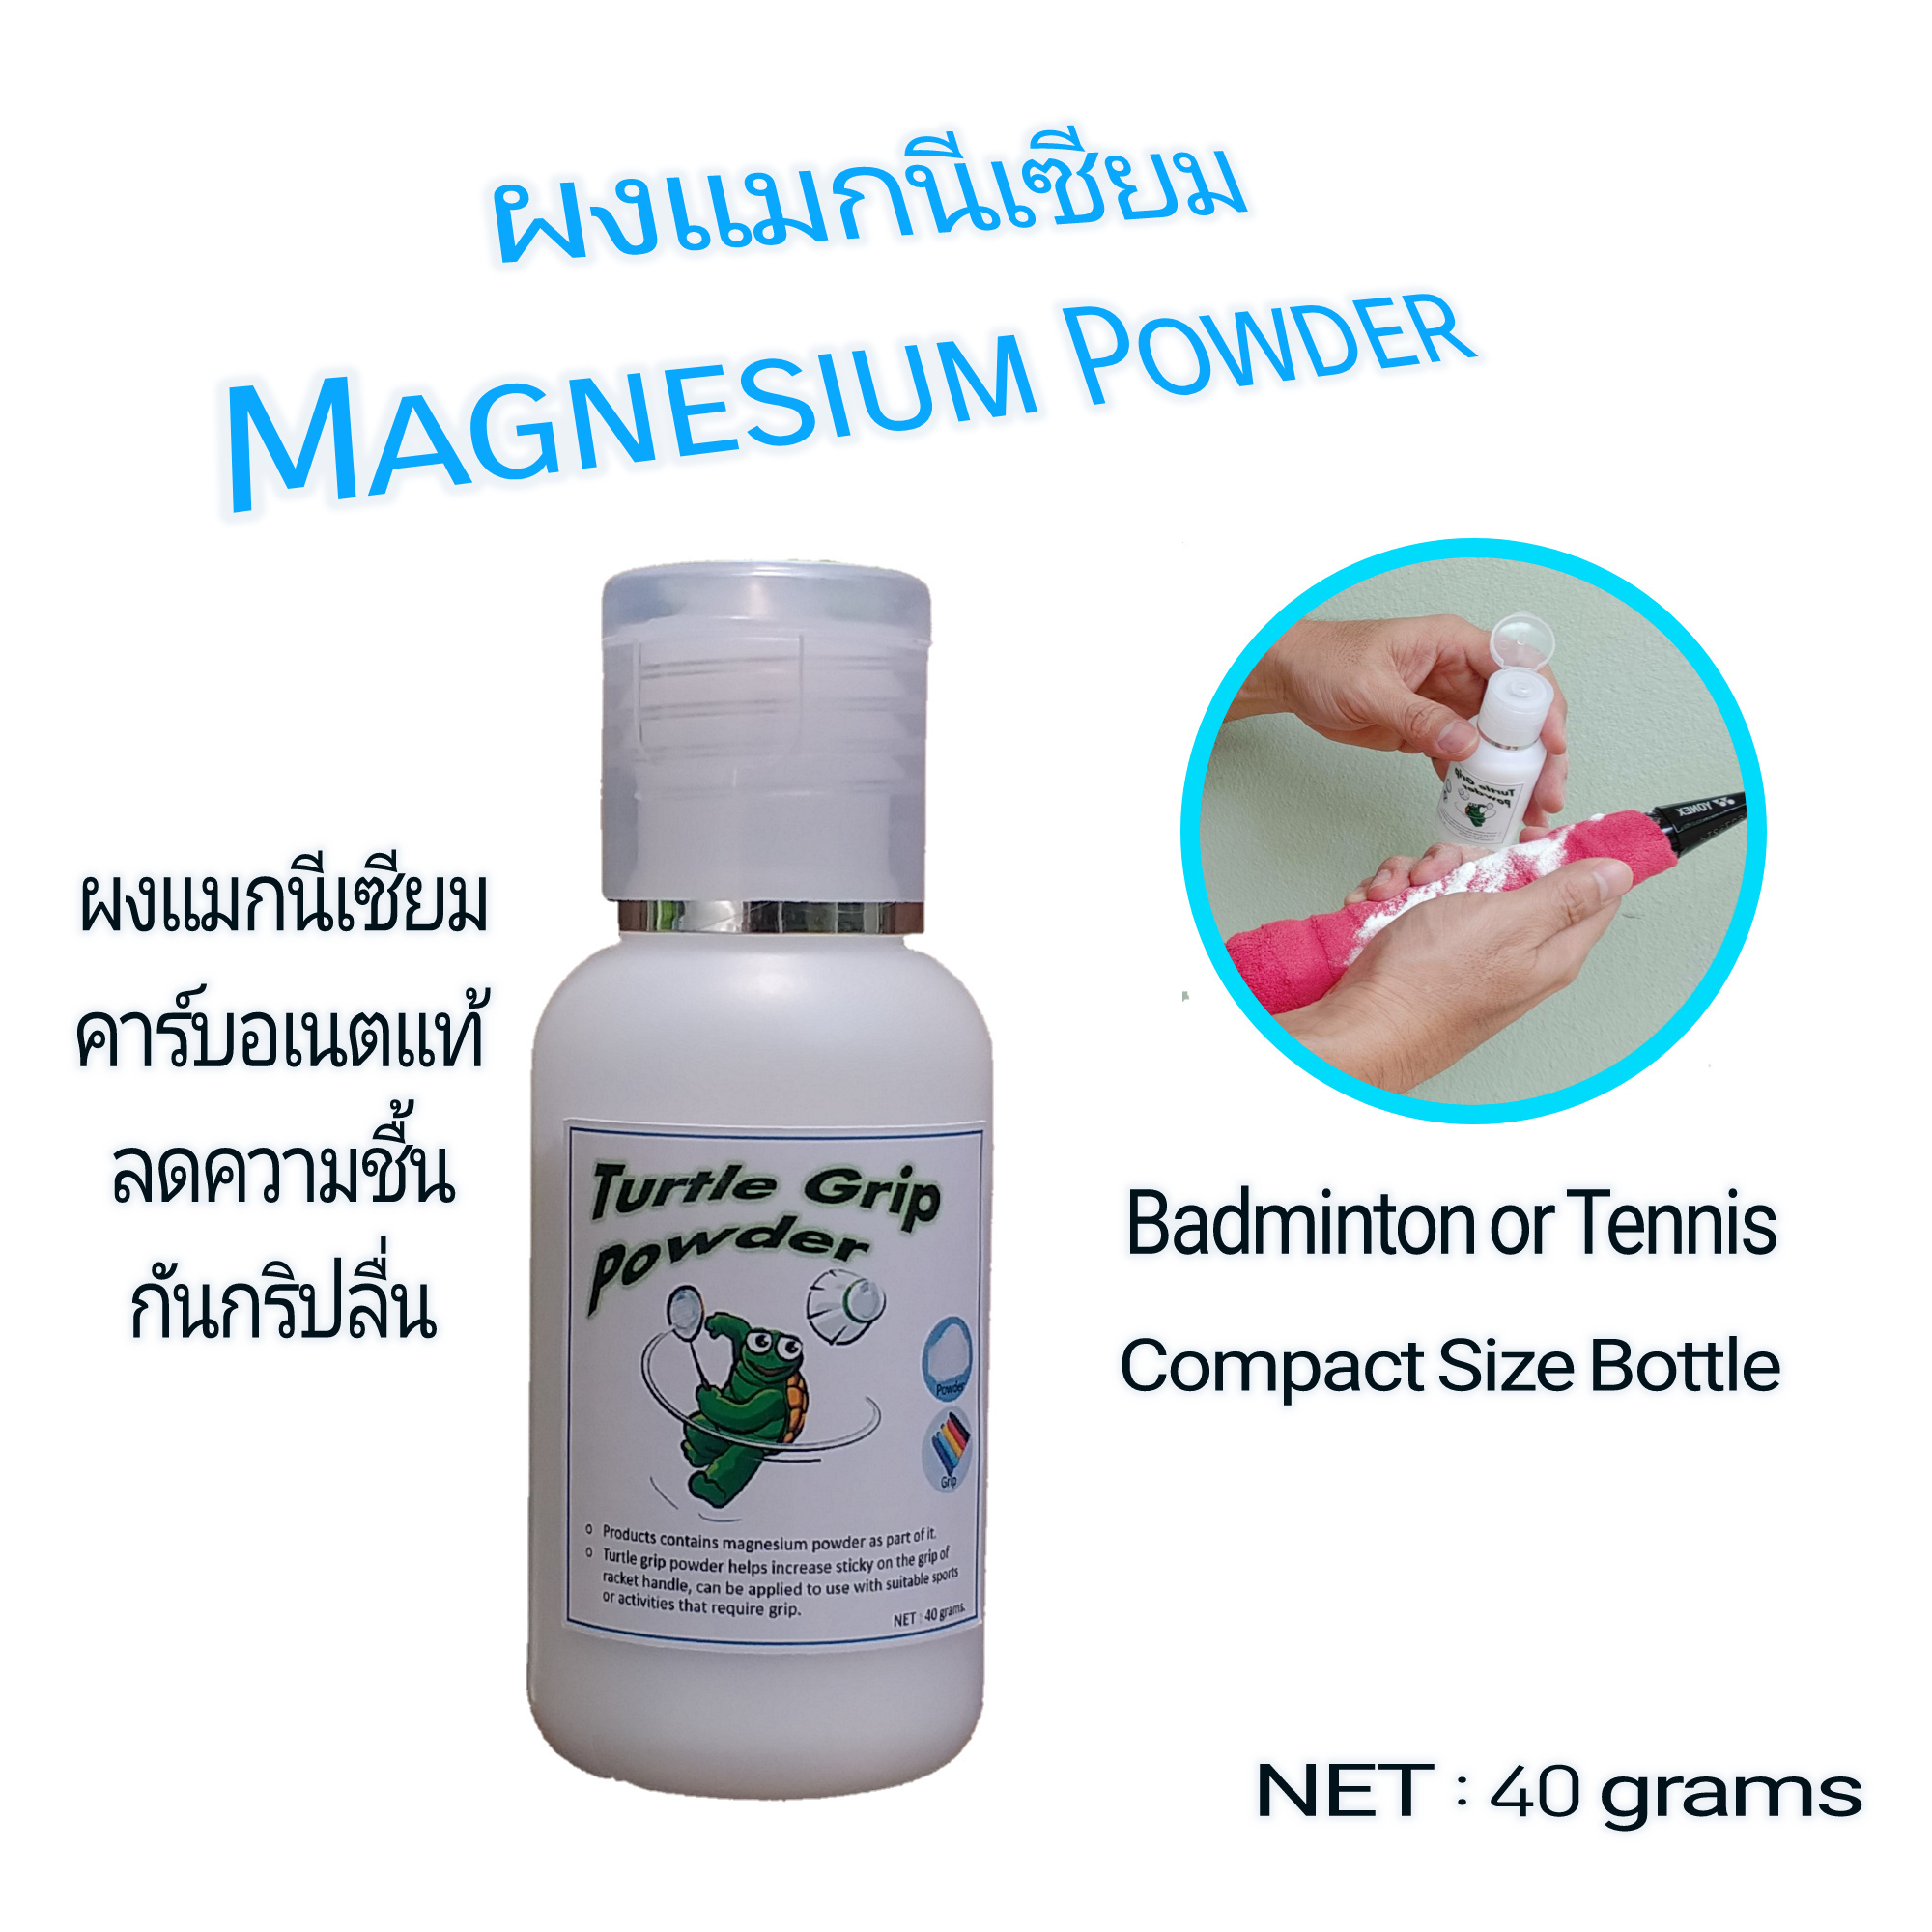 รูปภาพเพิ่มเติมเกี่ยวกับ ผงแมกนีเซียม Magnesium Powder Grip Powder ผงกันลื่น สำหรับกีฬาแบดมินตัน เทนนิส